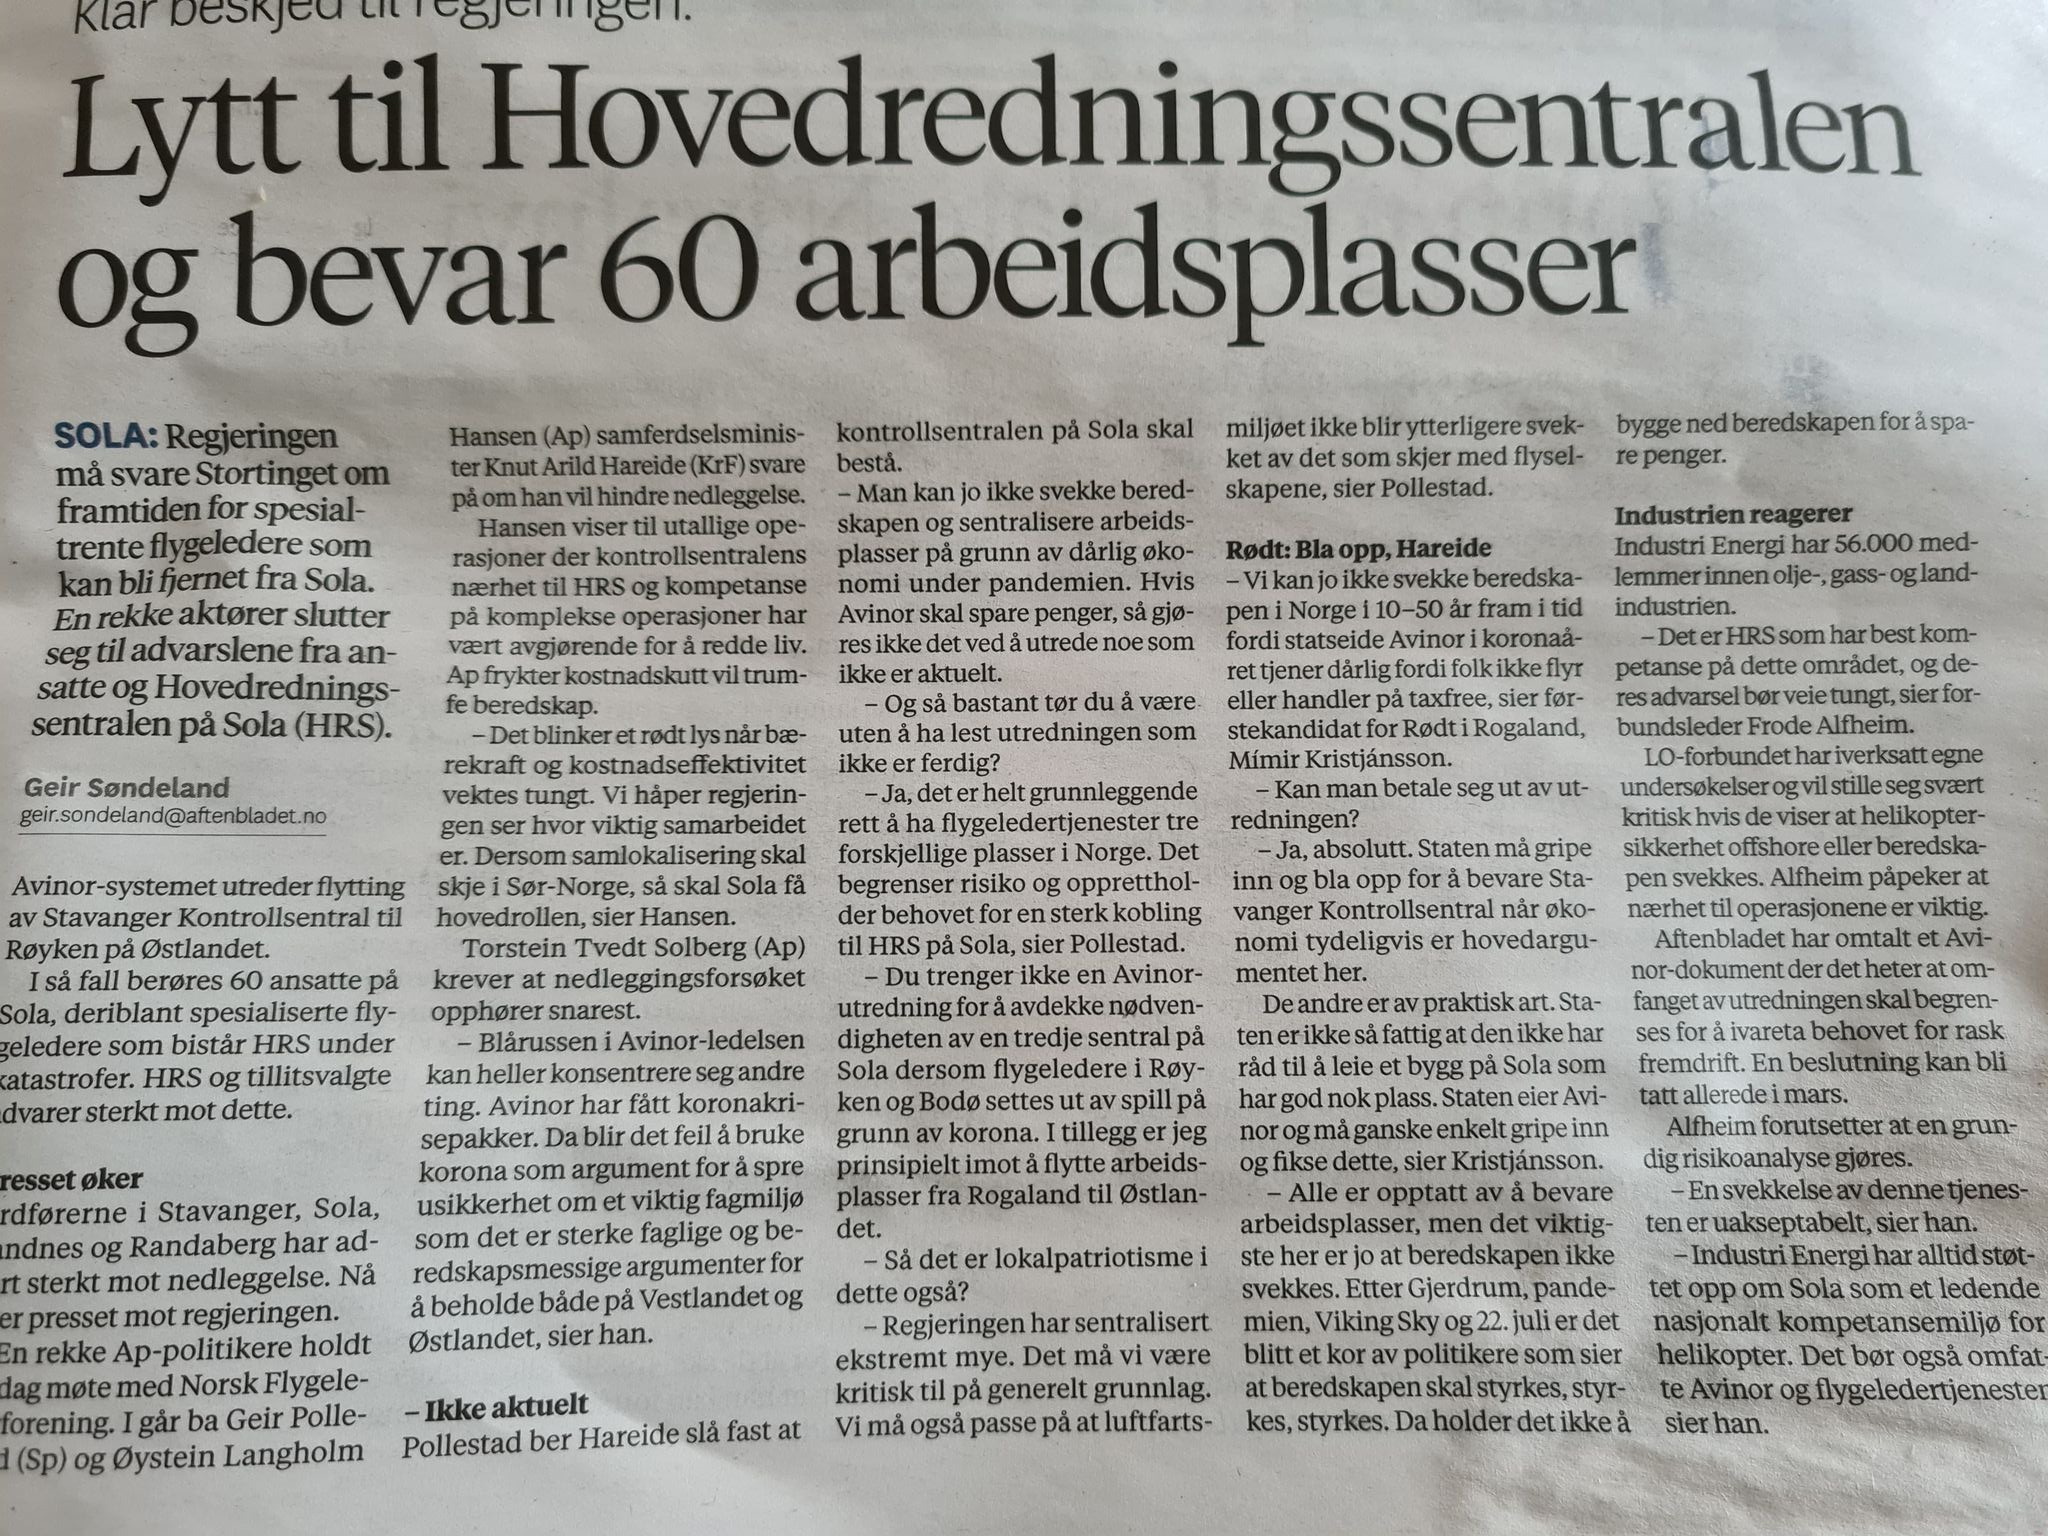 Faksimile av oppslag i Stavanger Aftenblad tirsdag 19. januar 2021, der Frode Alfheim advarer mot flytting av flygeledertjenester fra Sola.